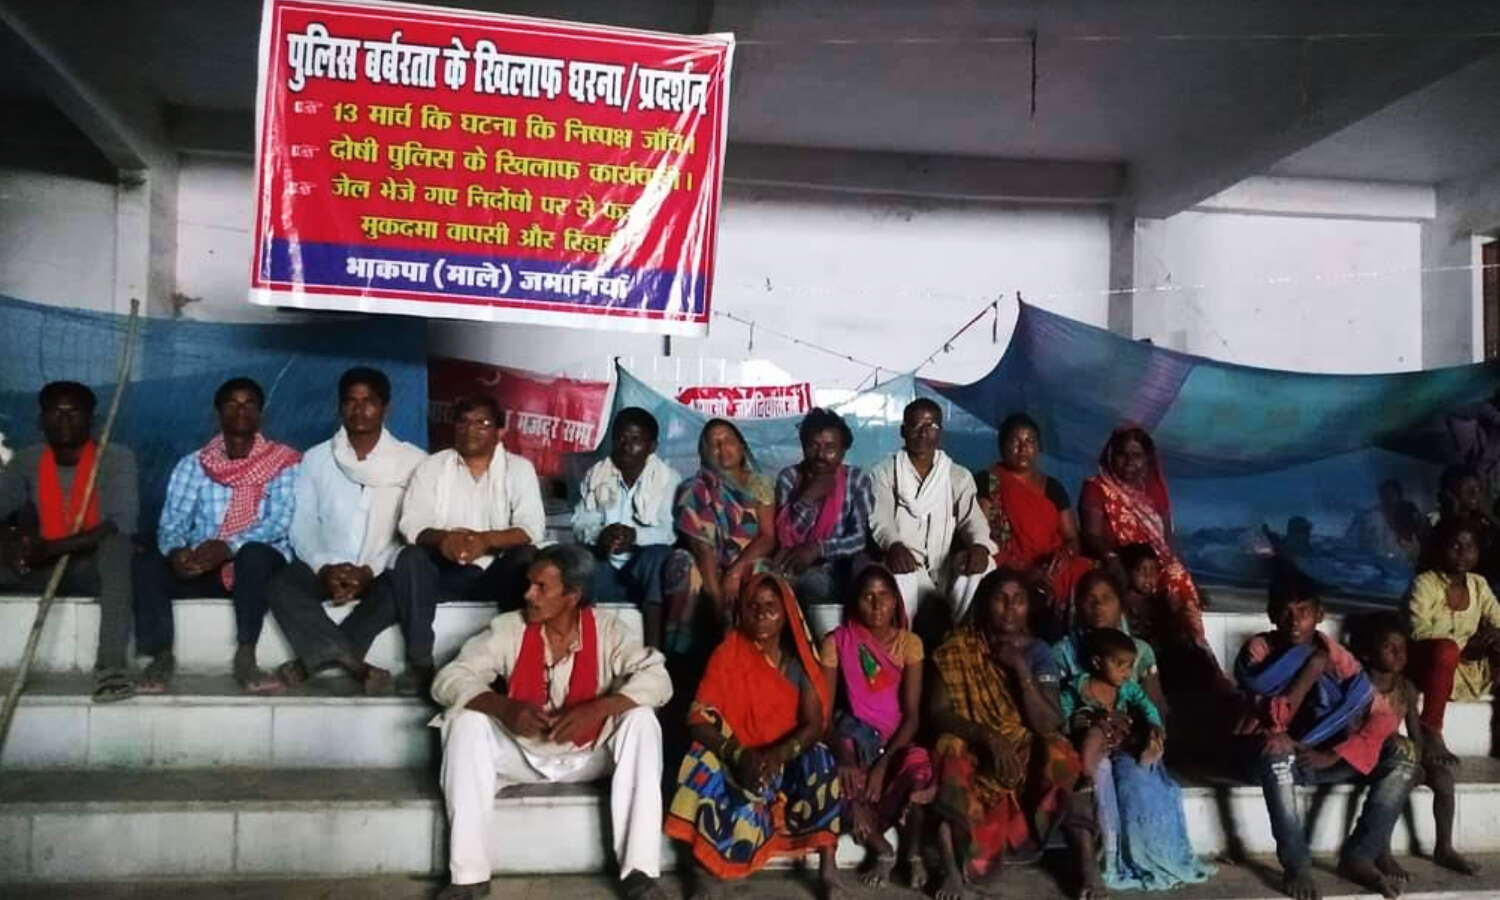 Ghazipur News : दलितों-गरीबों पर पुलिस जुल्म की घटना में न्याय हो वरना करेंगे राज्यव्यापी आंदोलन, माले की चेतावनी